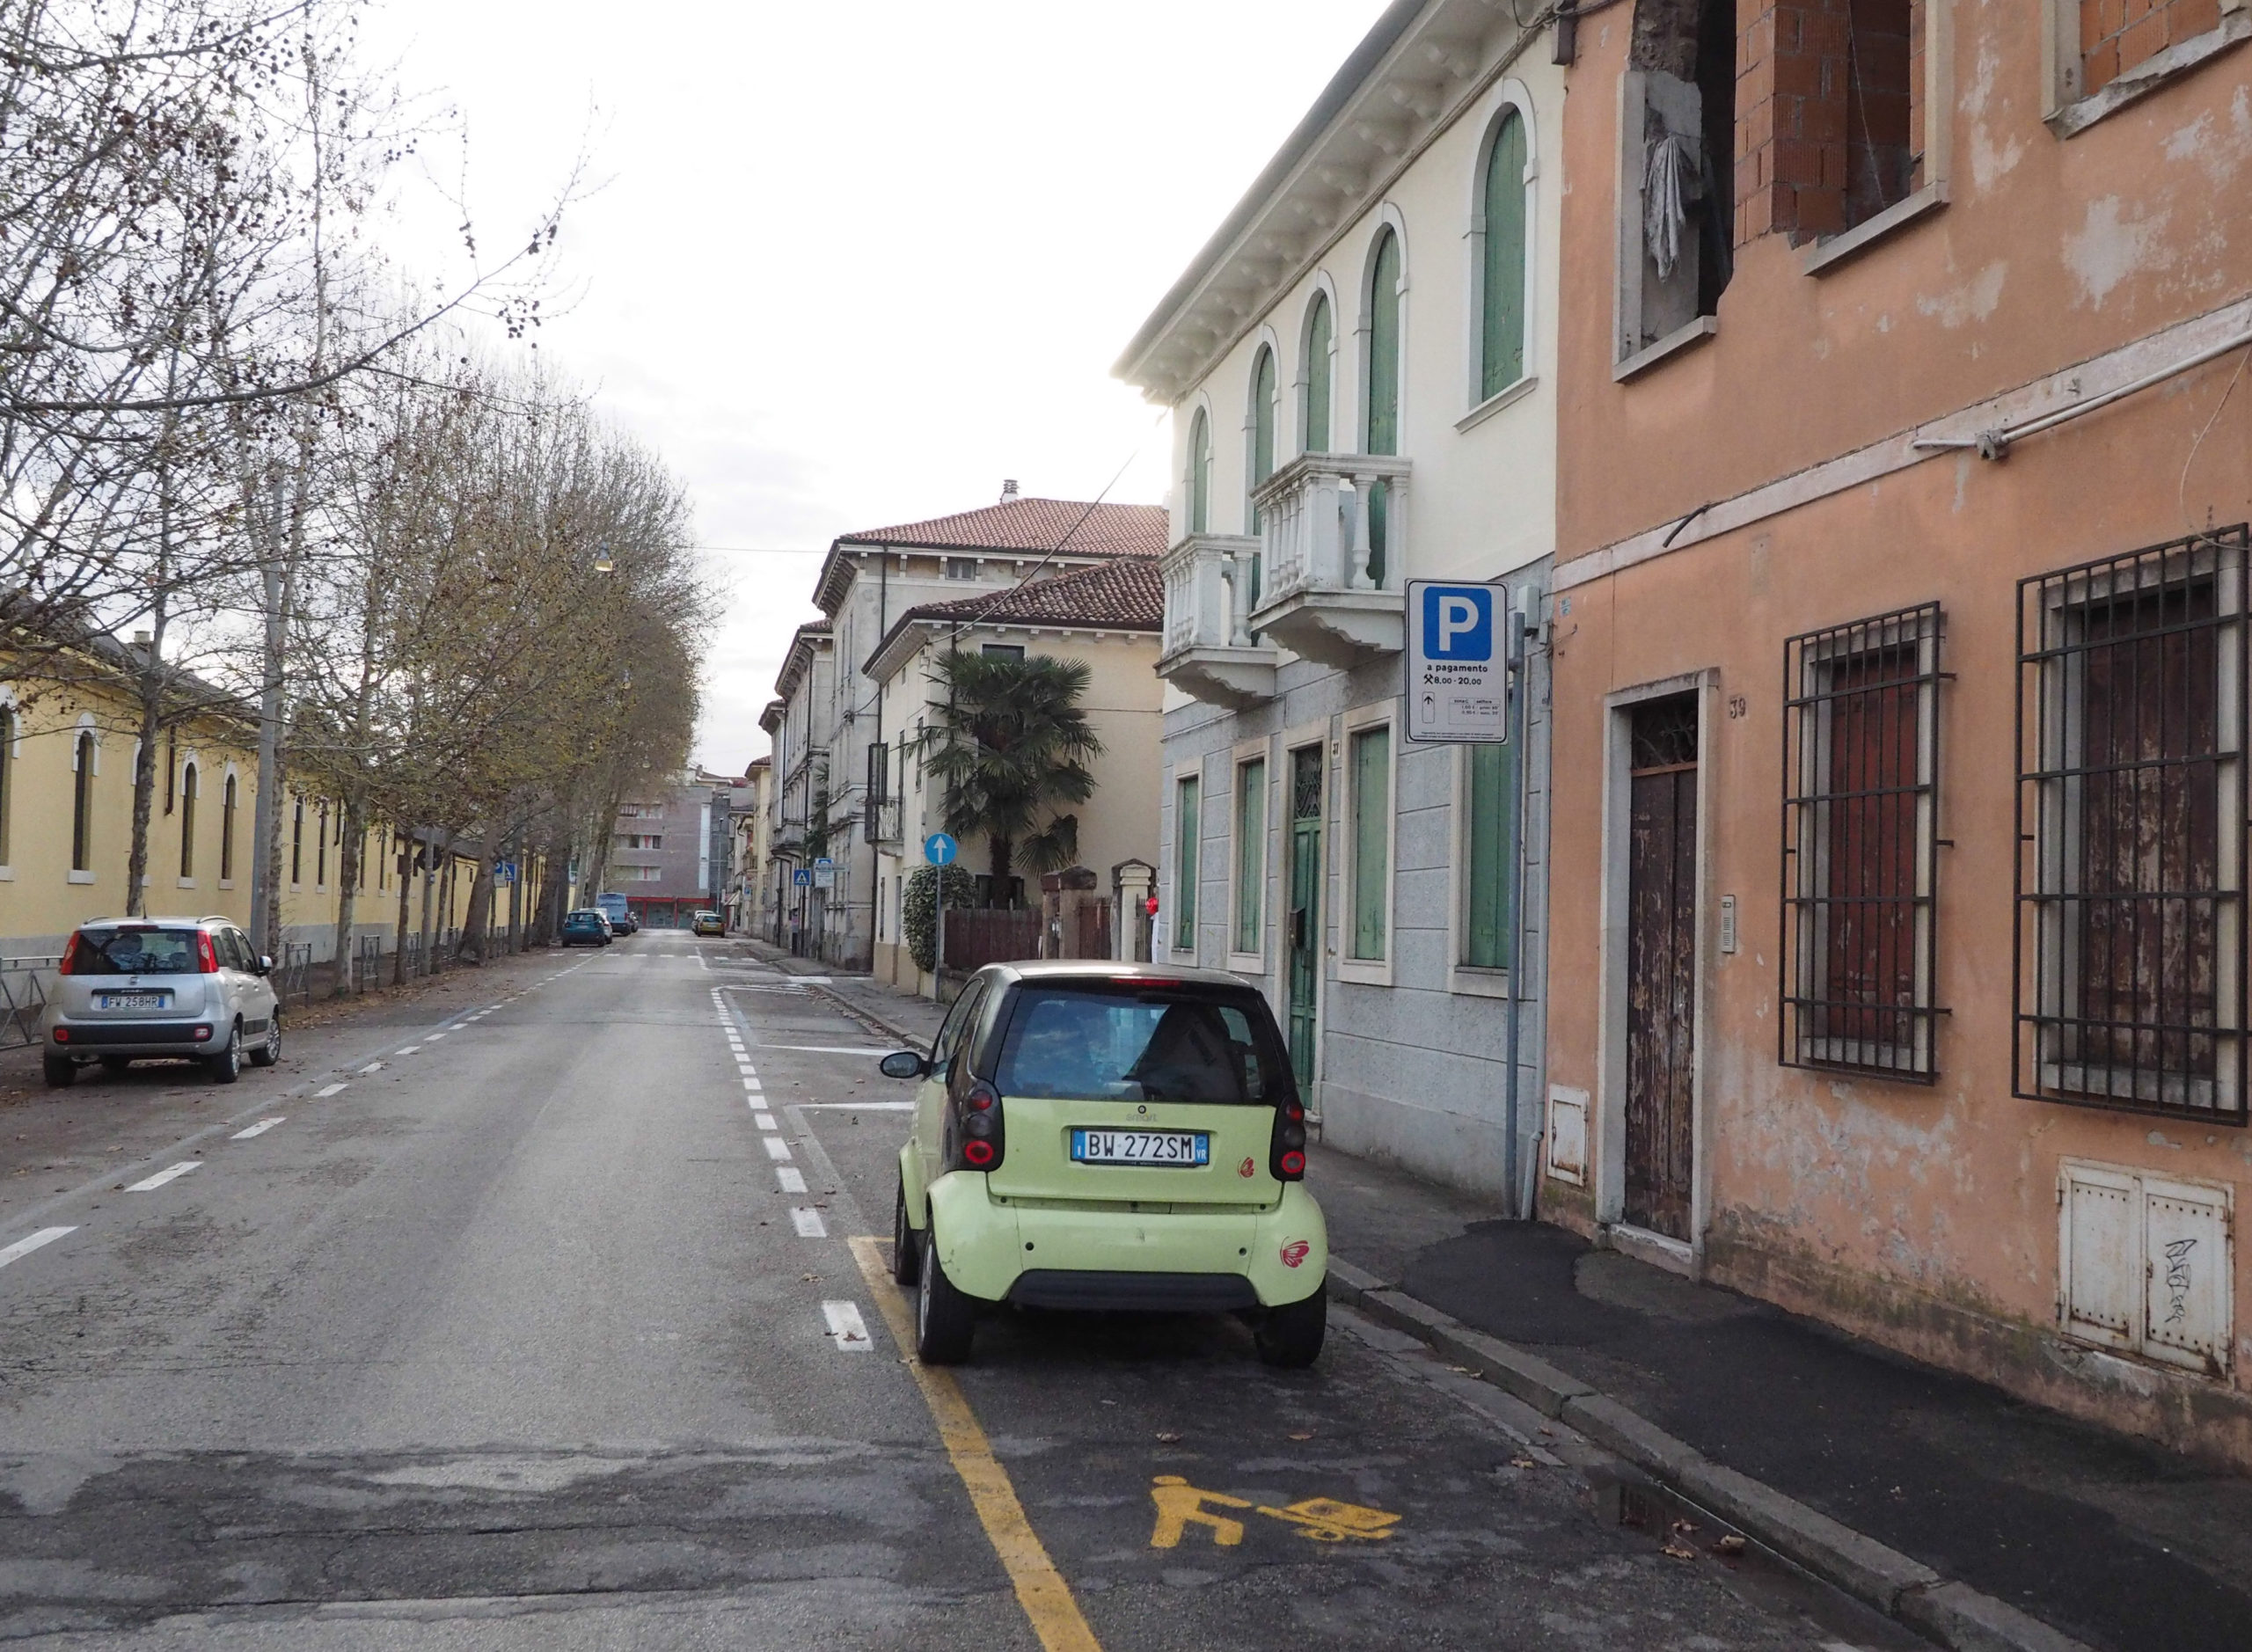 Via San Martino (Vicenza-Francesco Dalla Pozza-Colorfoto per ViPiù)